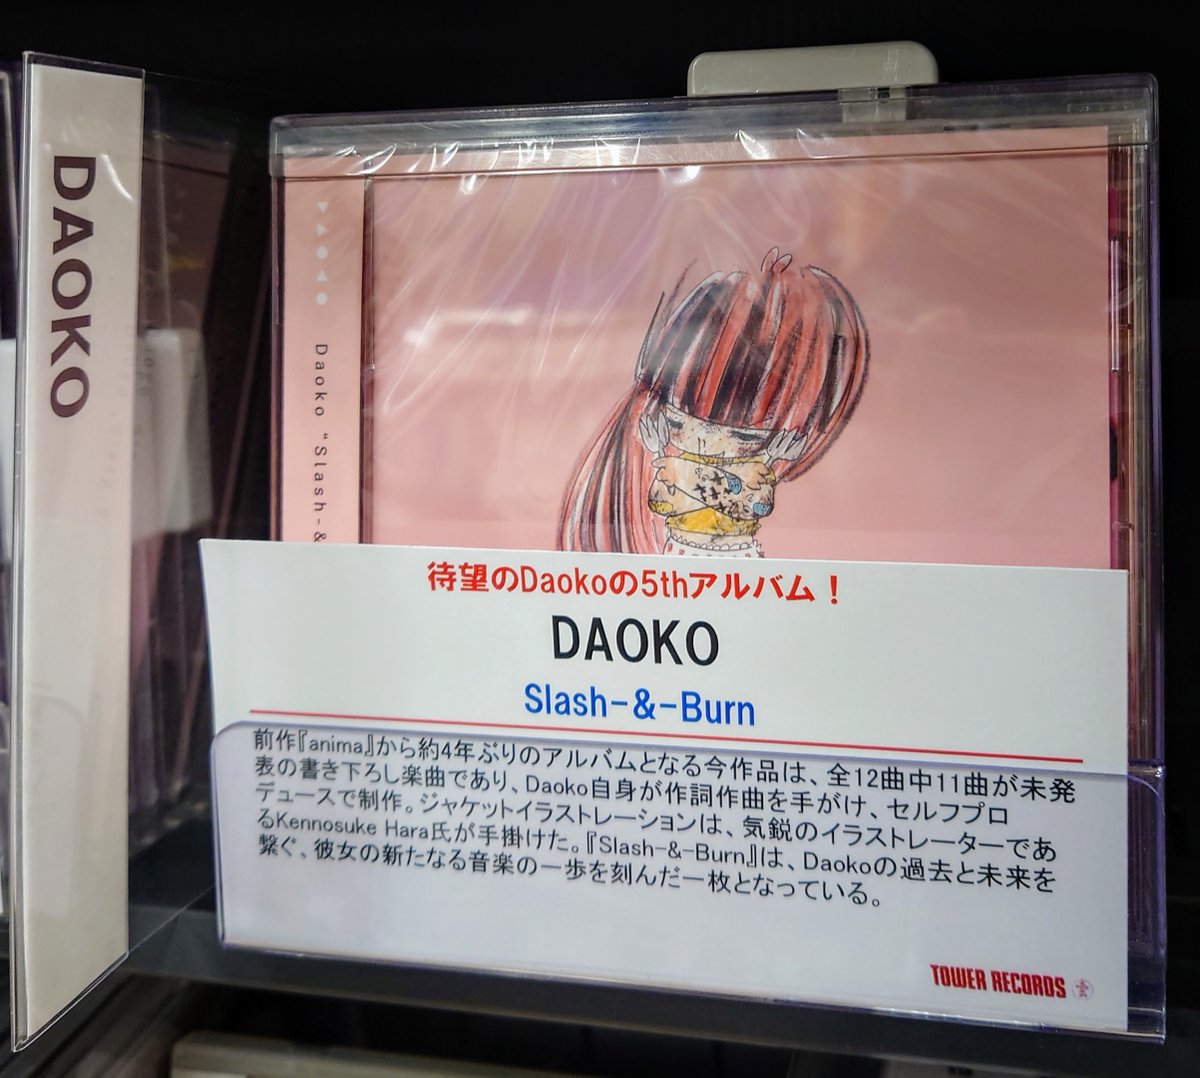 【#DAOKO】 待望の5thアルバム 『Slash-&-Burn』 入荷しました💿 全12曲中11曲が未発表の書き下ろし楽曲であり、 Daoko自身が作詞作曲を手がけ、セルフプロデュースで制作👏 🎁特典🎁ポストカード tower.jp/item/6337951/S… #CD入荷情報